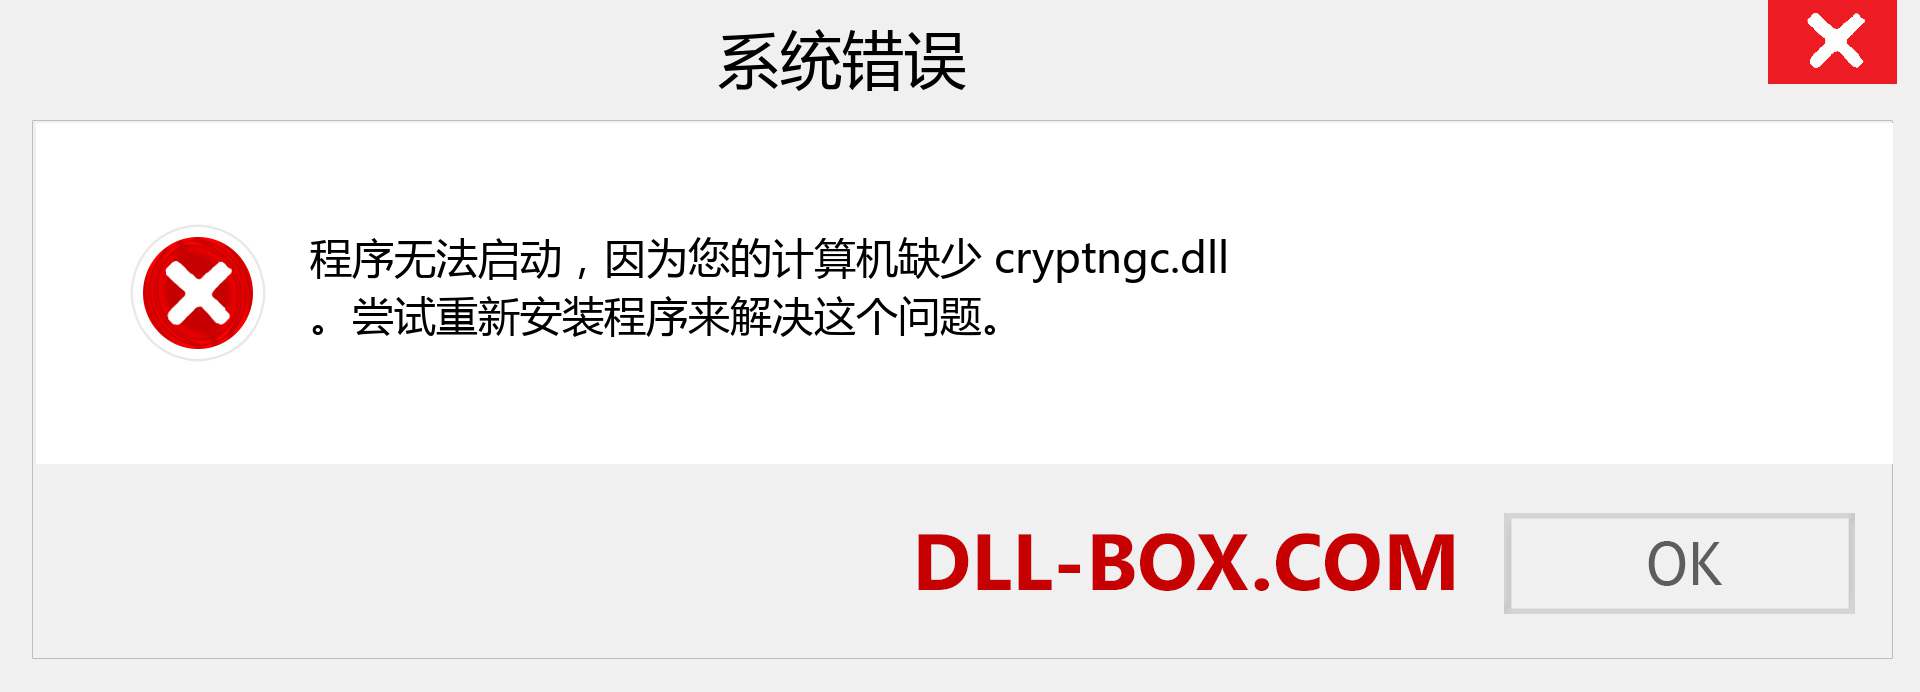 cryptngc.dll 文件丢失？。 适用于 Windows 7、8、10 的下载 - 修复 Windows、照片、图像上的 cryptngc dll 丢失错误